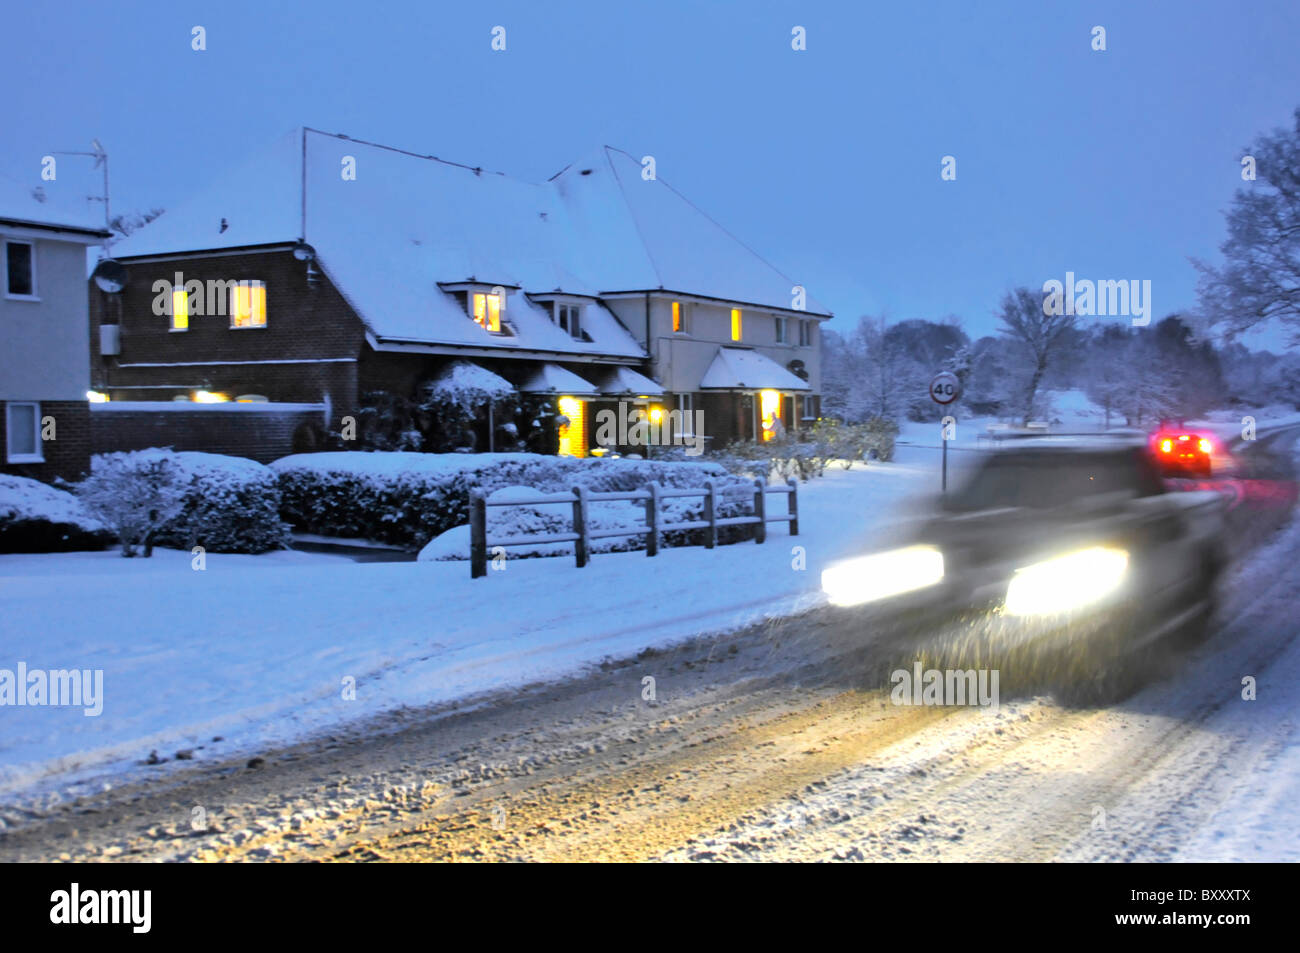 La conduite sur les routes couvertes de neige au crépuscule Banque D'Images